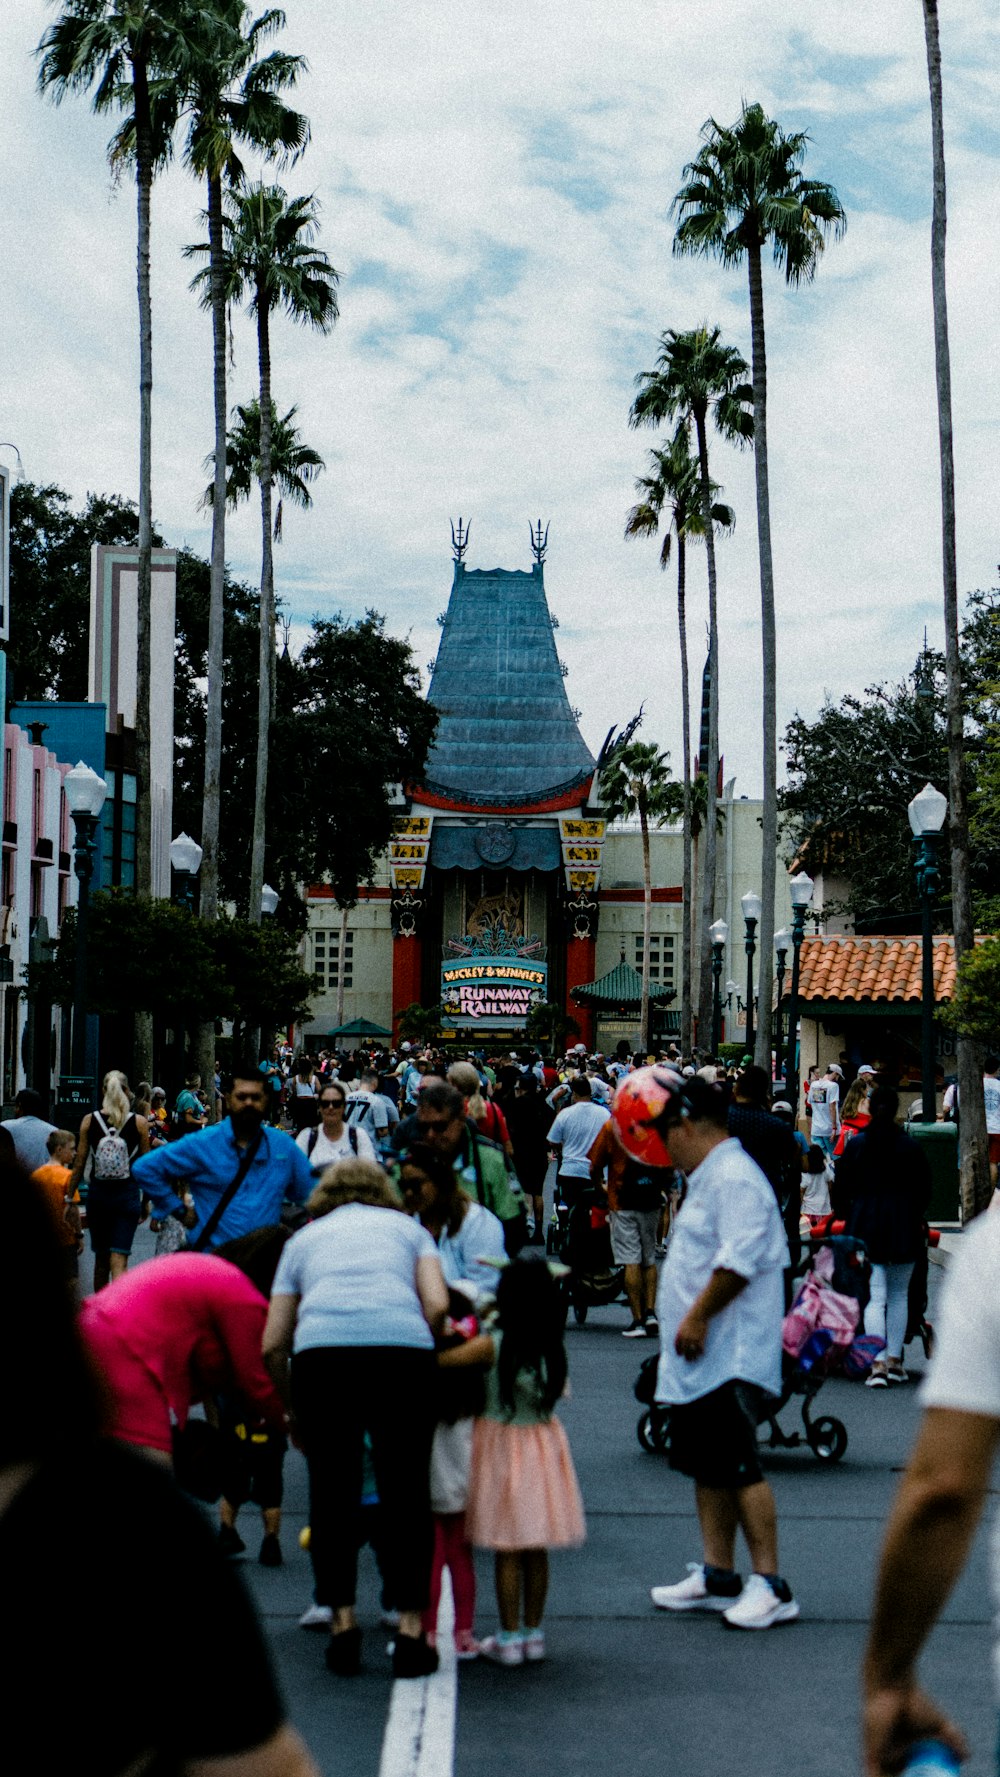 una multitud de personas caminando por una calle junto a altas palmeras